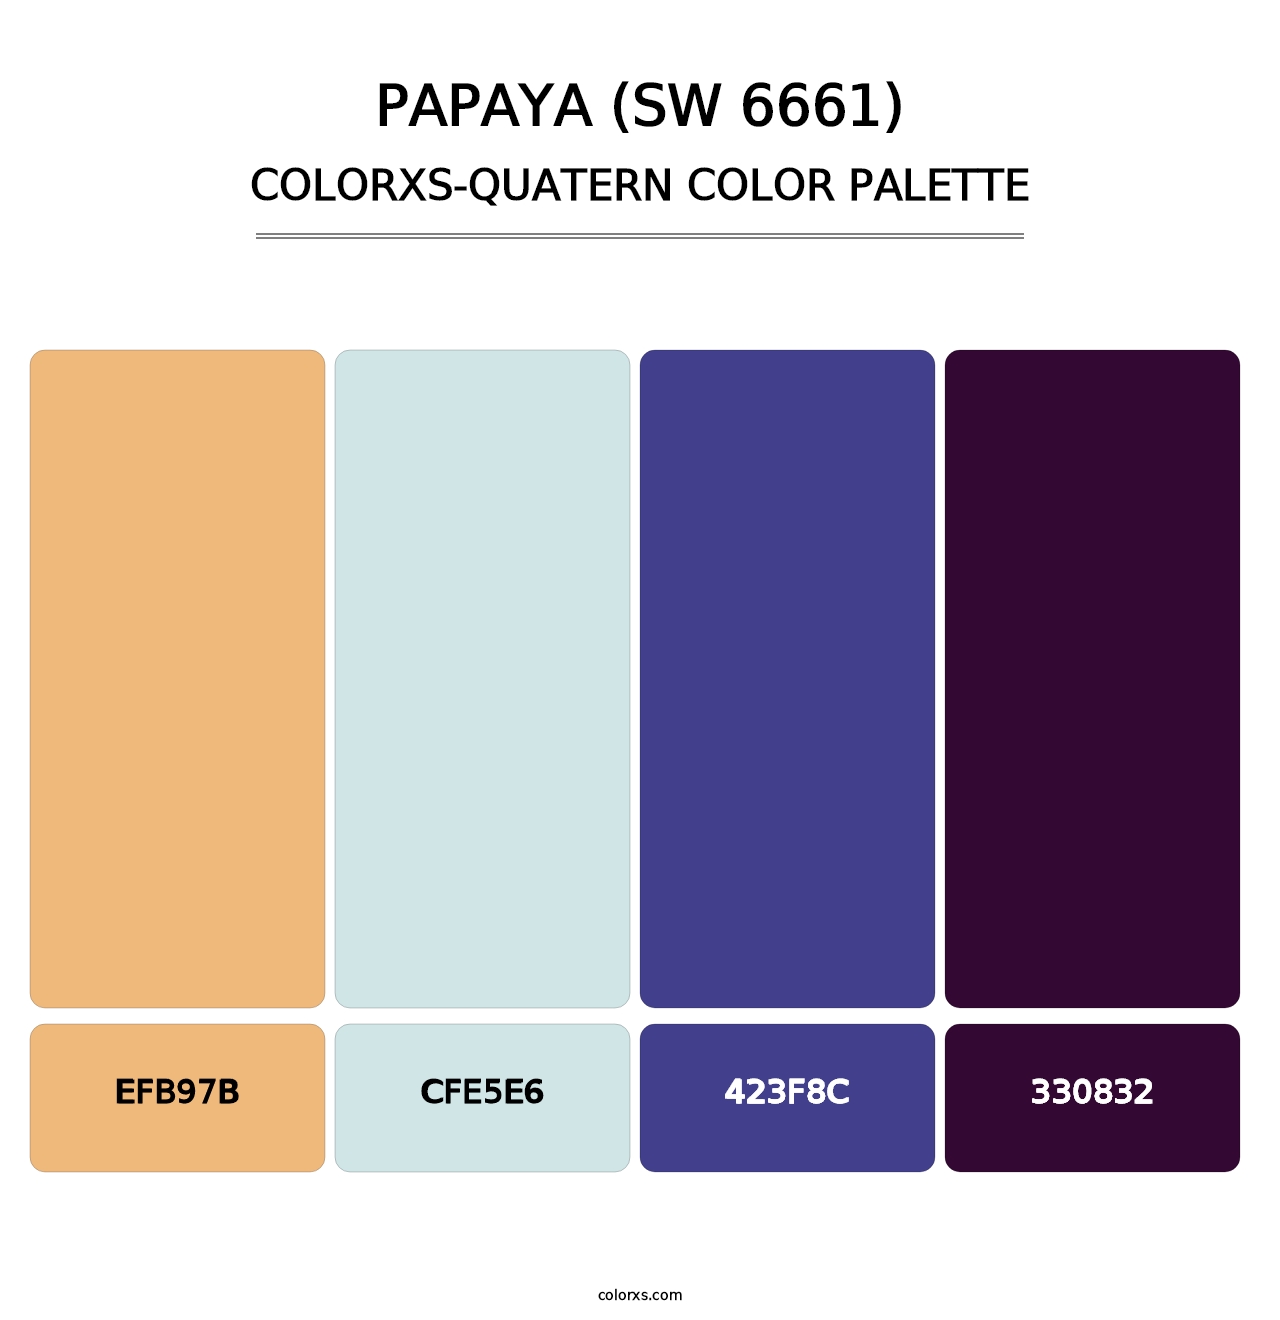 Papaya (SW 6661) - Colorxs Quatern Palette